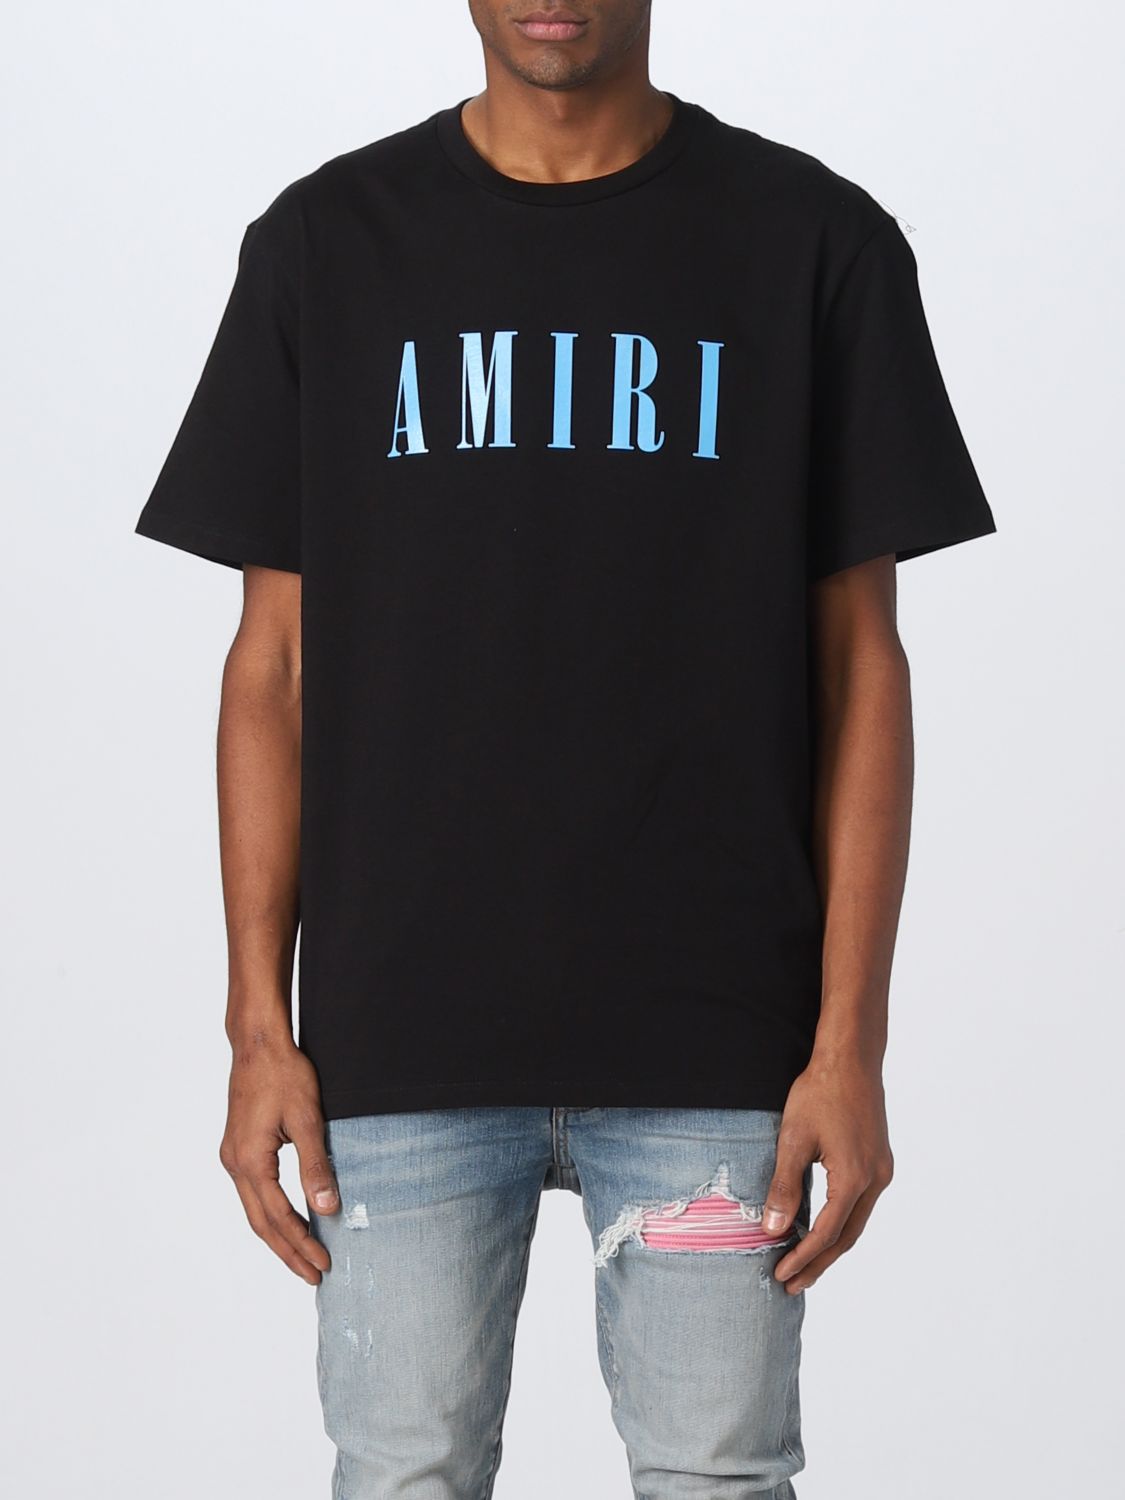 【匿名送料込み】AMIRI 黒 Tシャツ